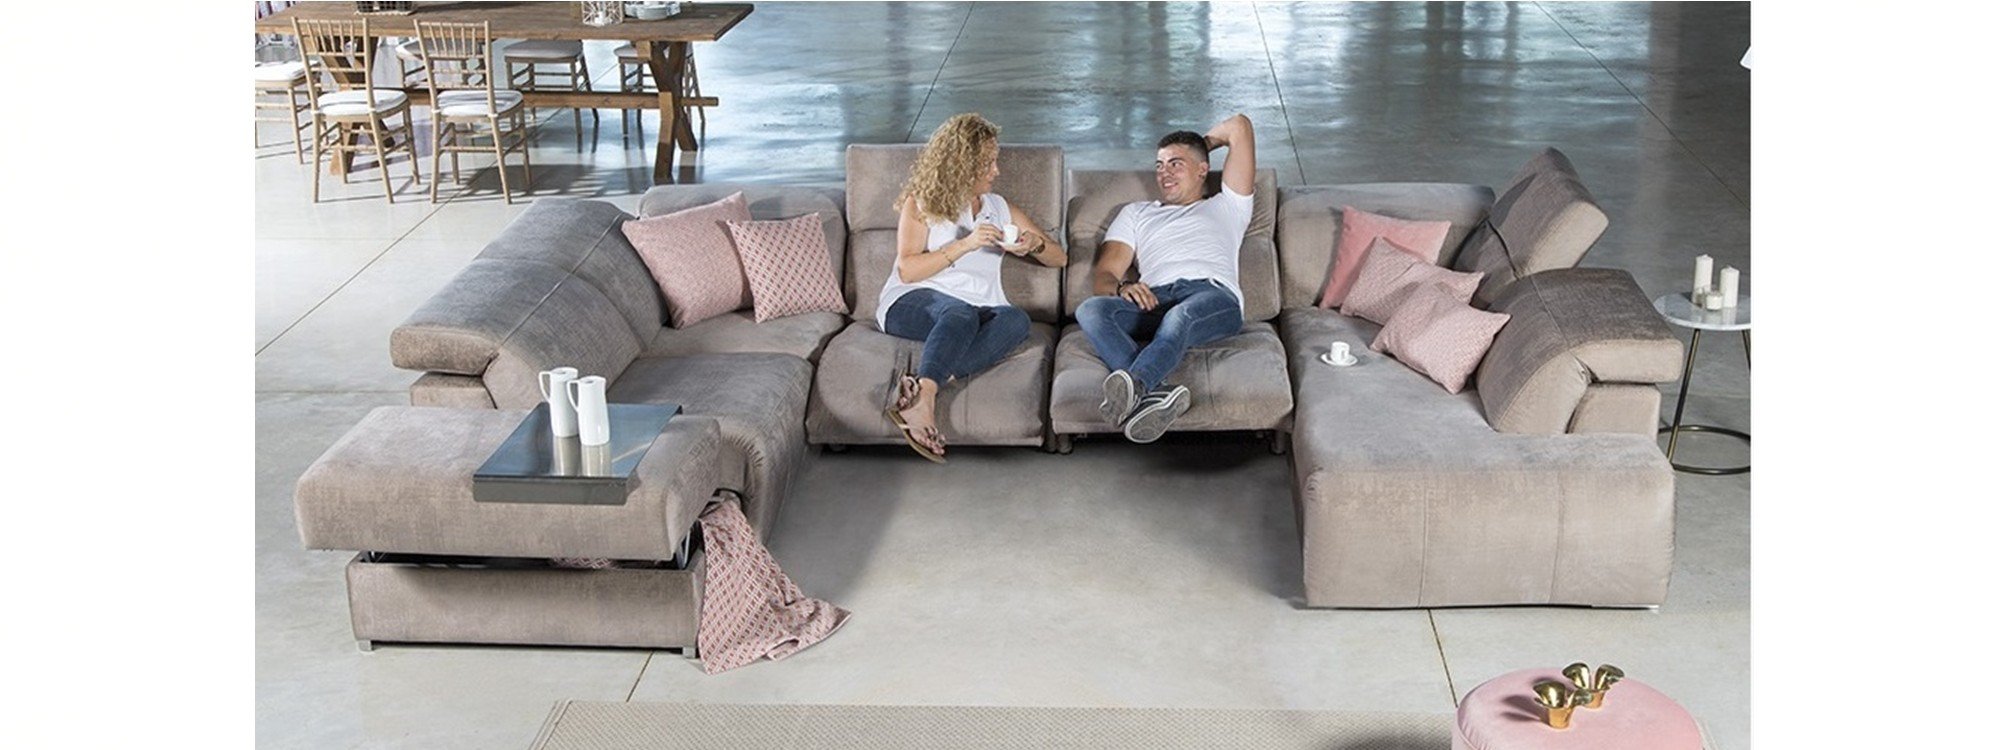 Comprar sofás rinconera con asientos relax motor online